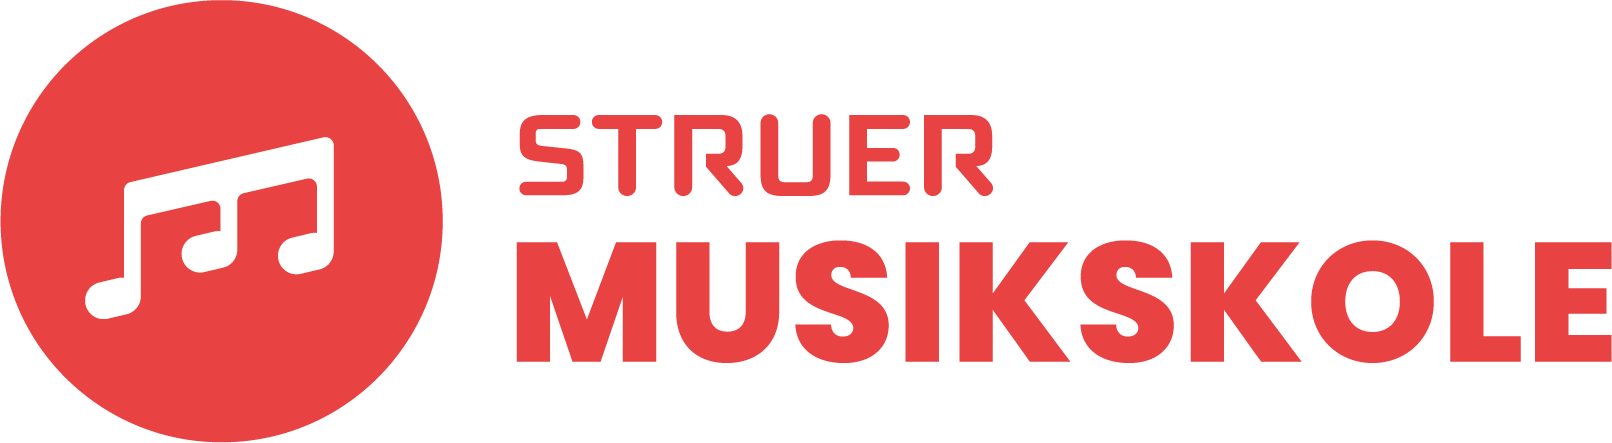 Struer Musikskole Logo